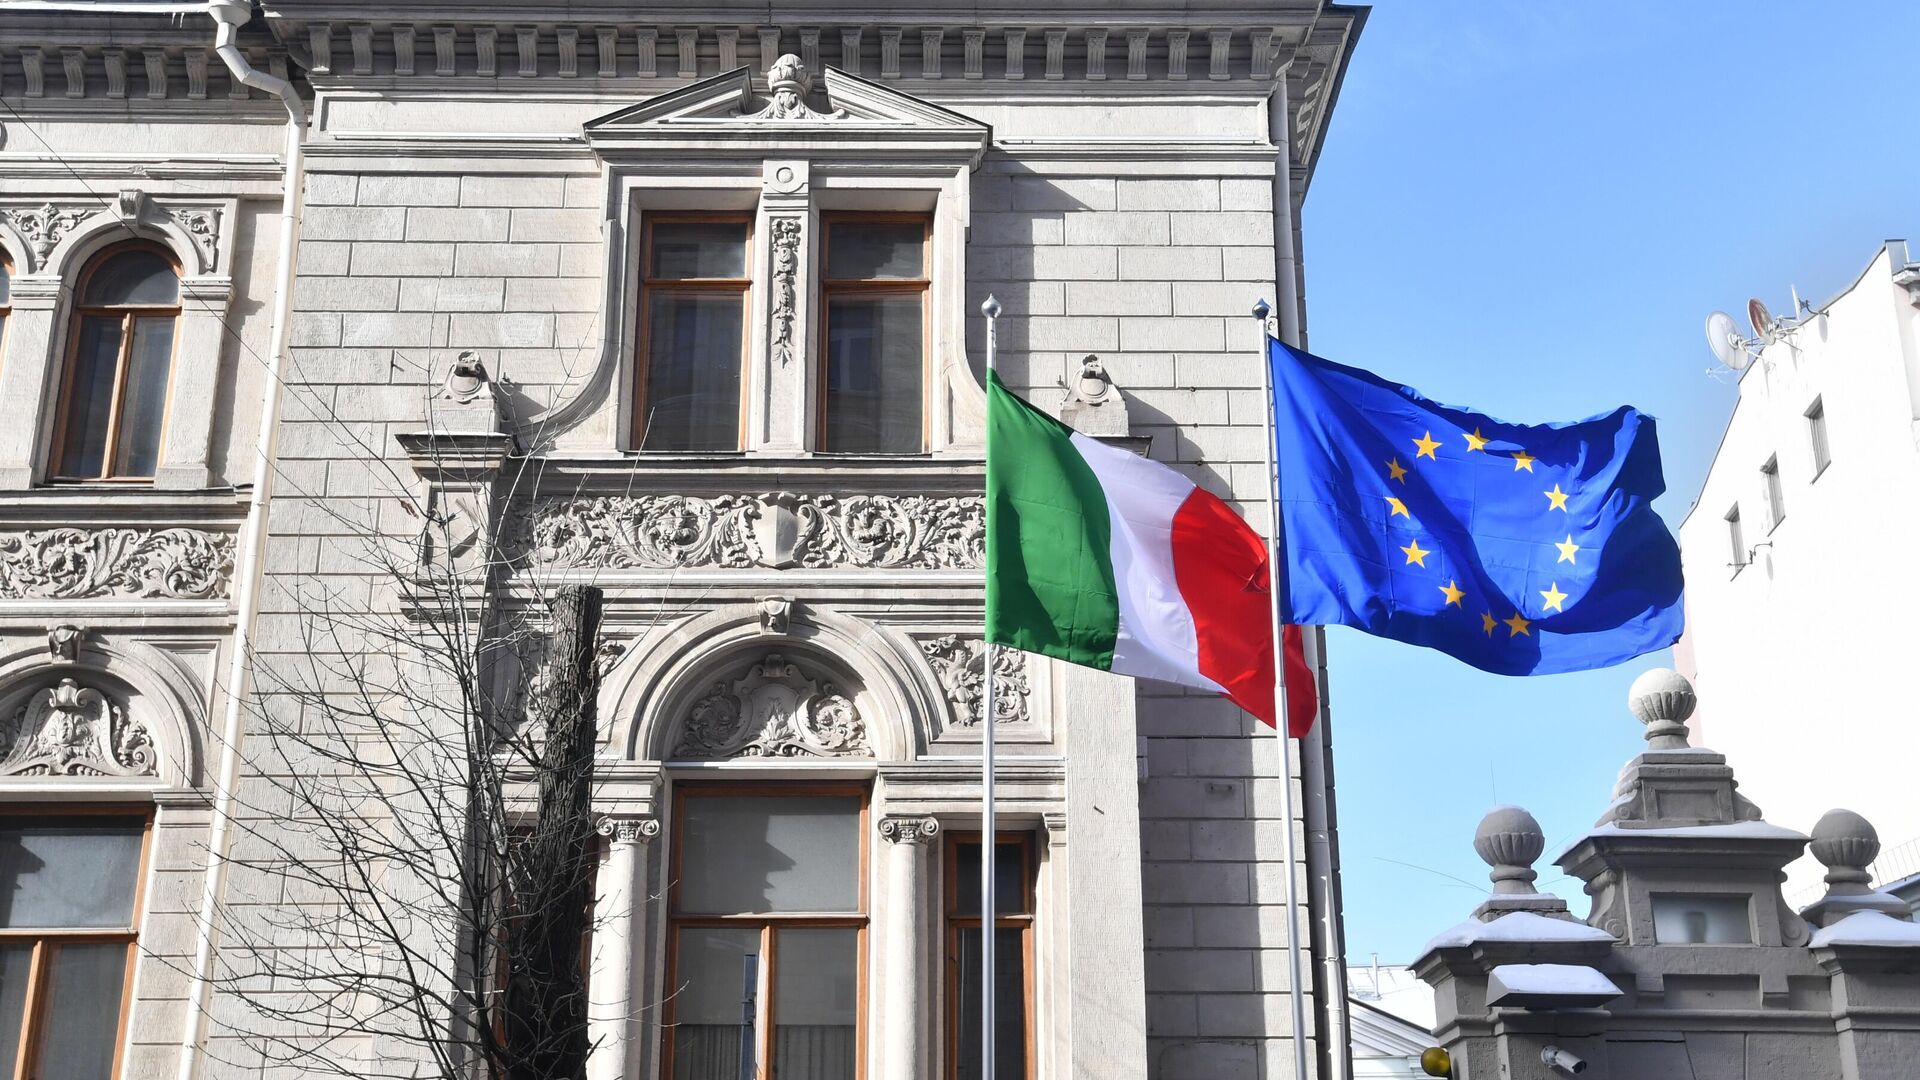 Европу могут раздавить, если она не объединится в обороне, заявили в Италии